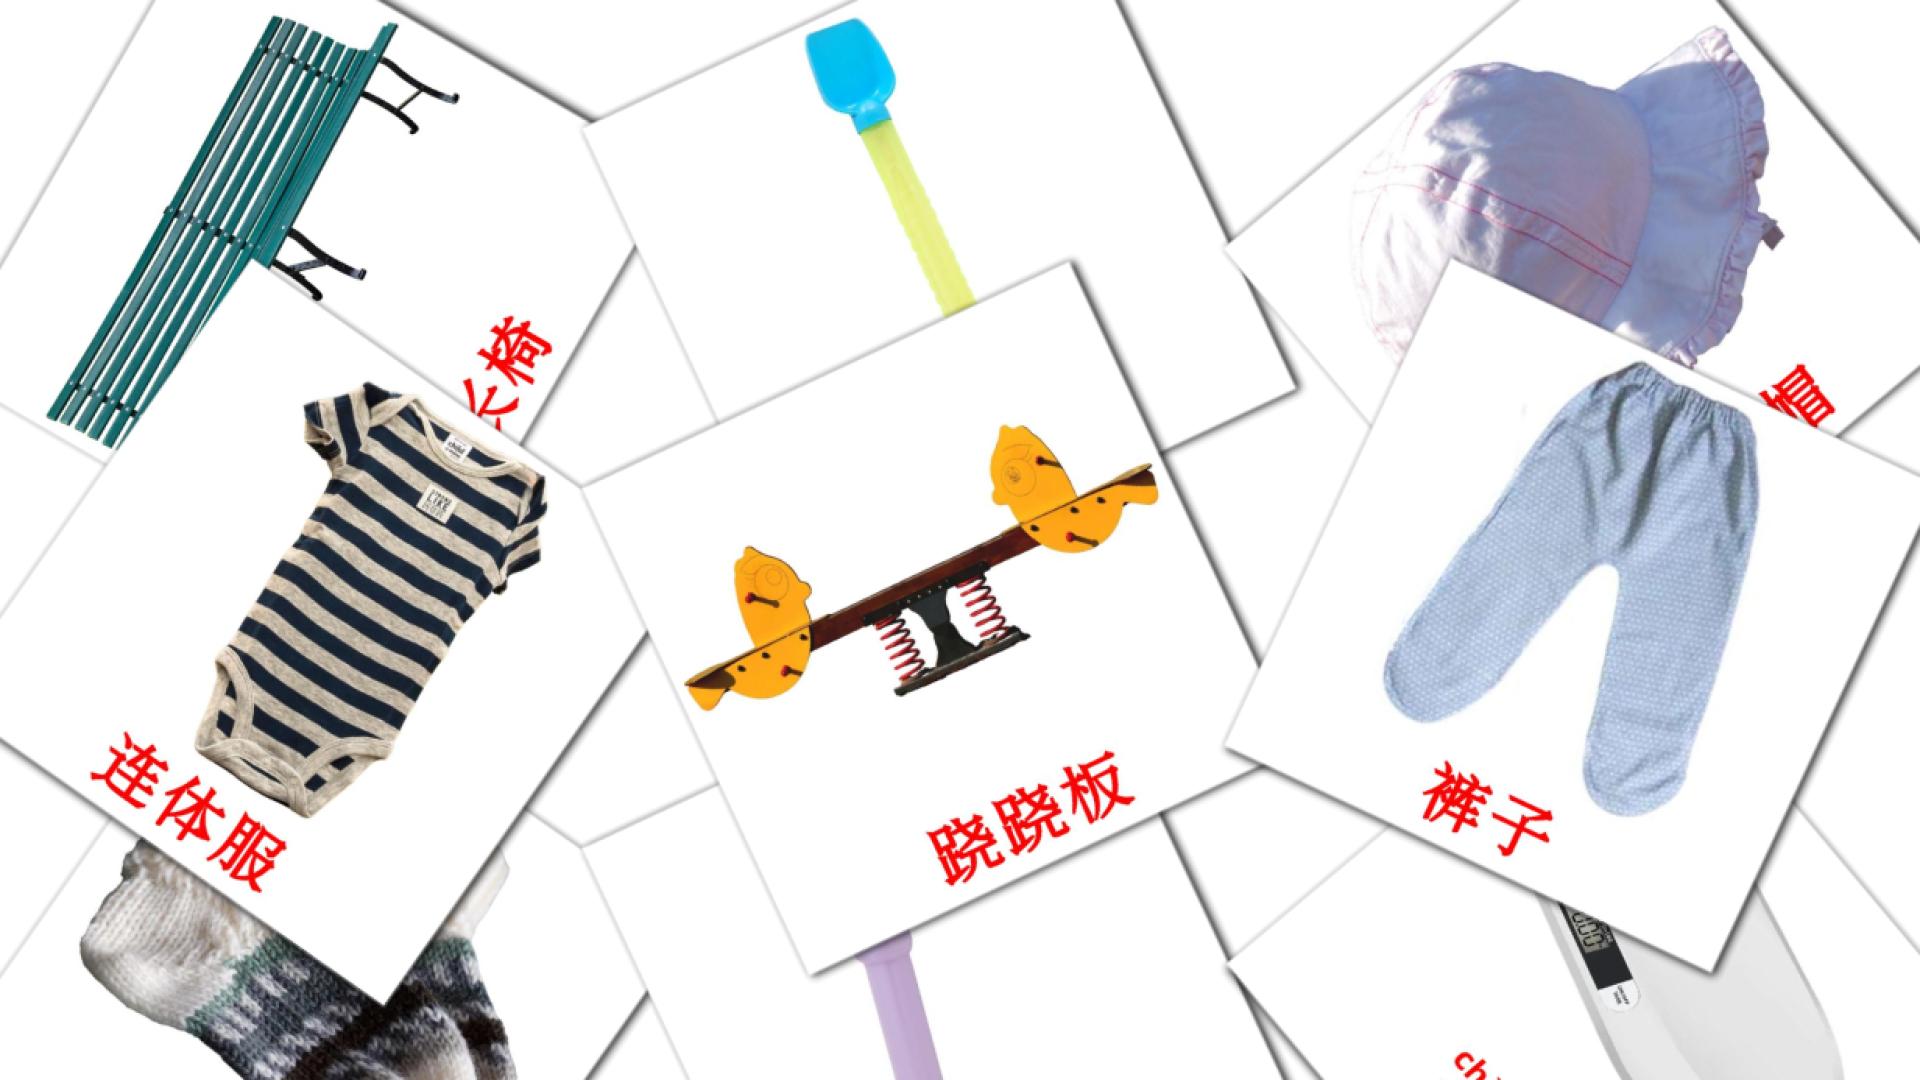 Chinesisch(Vereinfacht) 宝宝e Vokabelkarteikarten